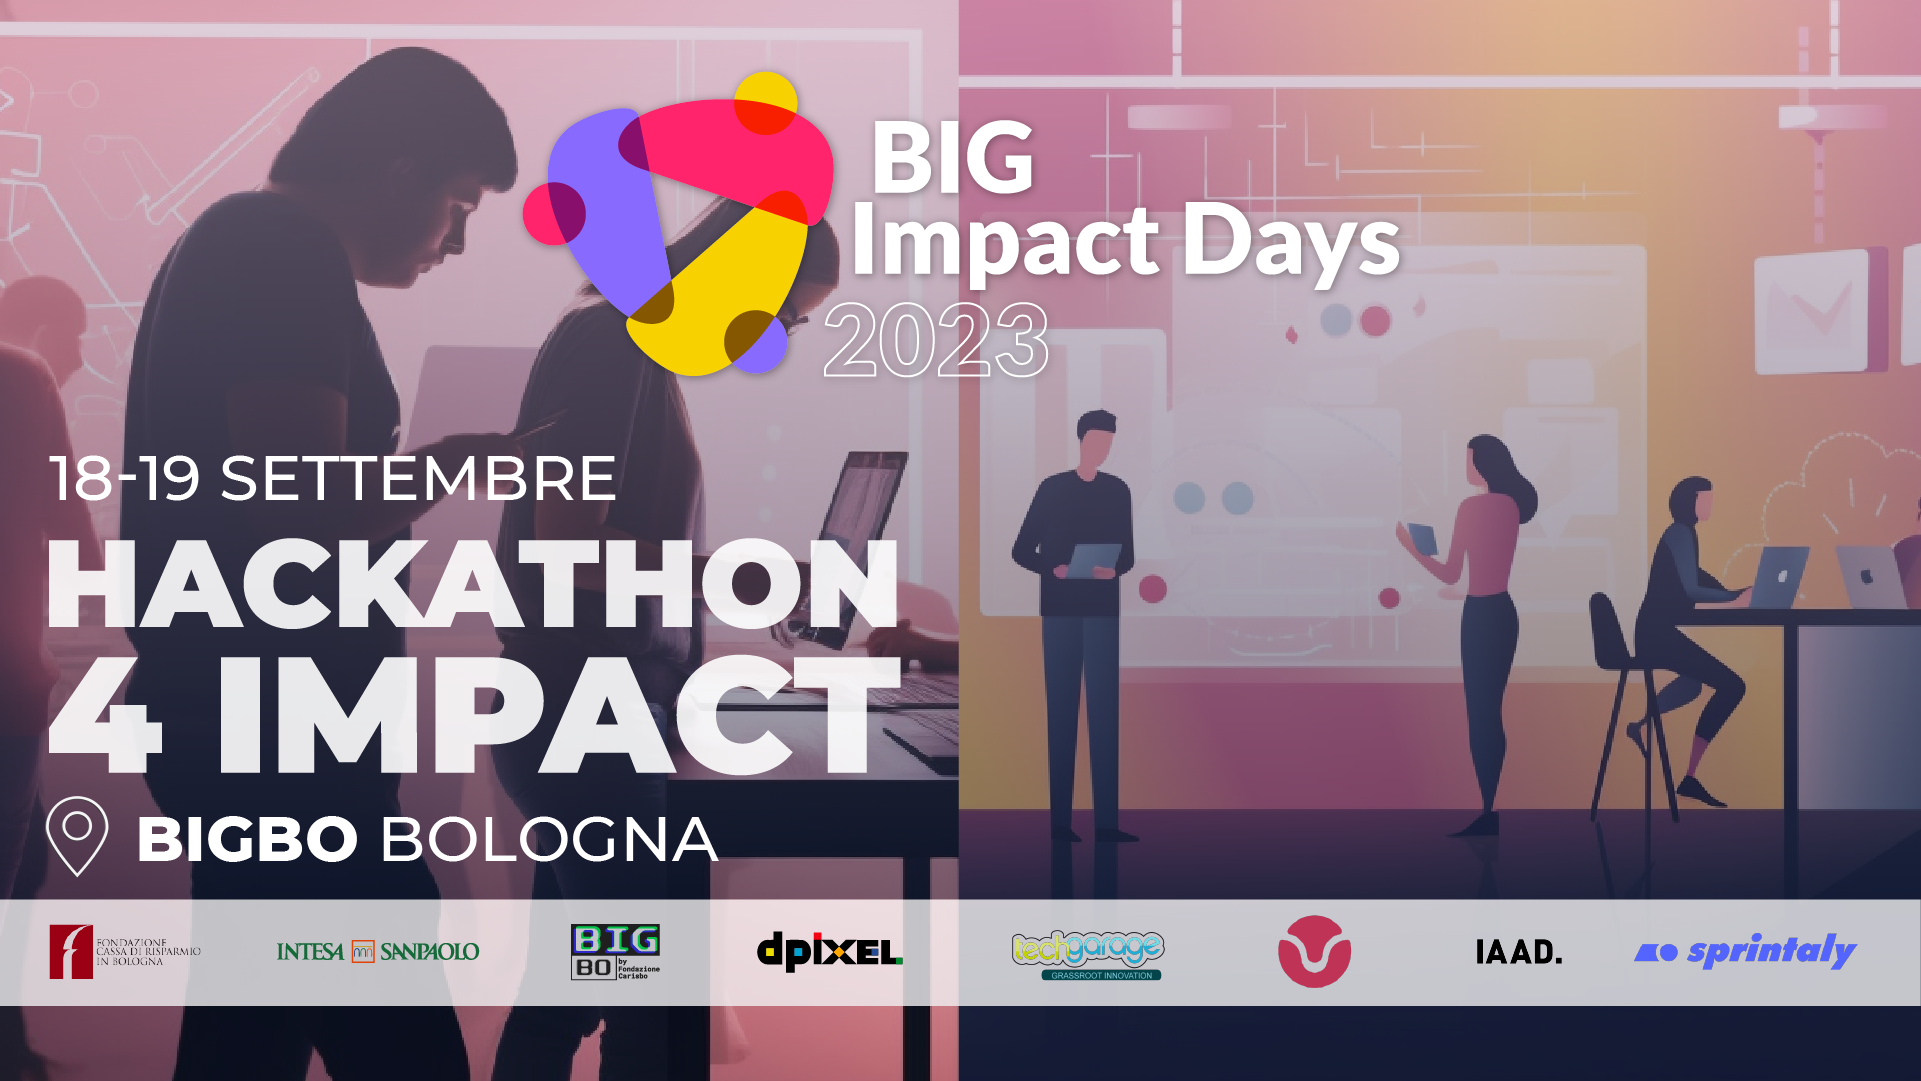 BIG Impact Days 2023: Hackathon 4 Impact